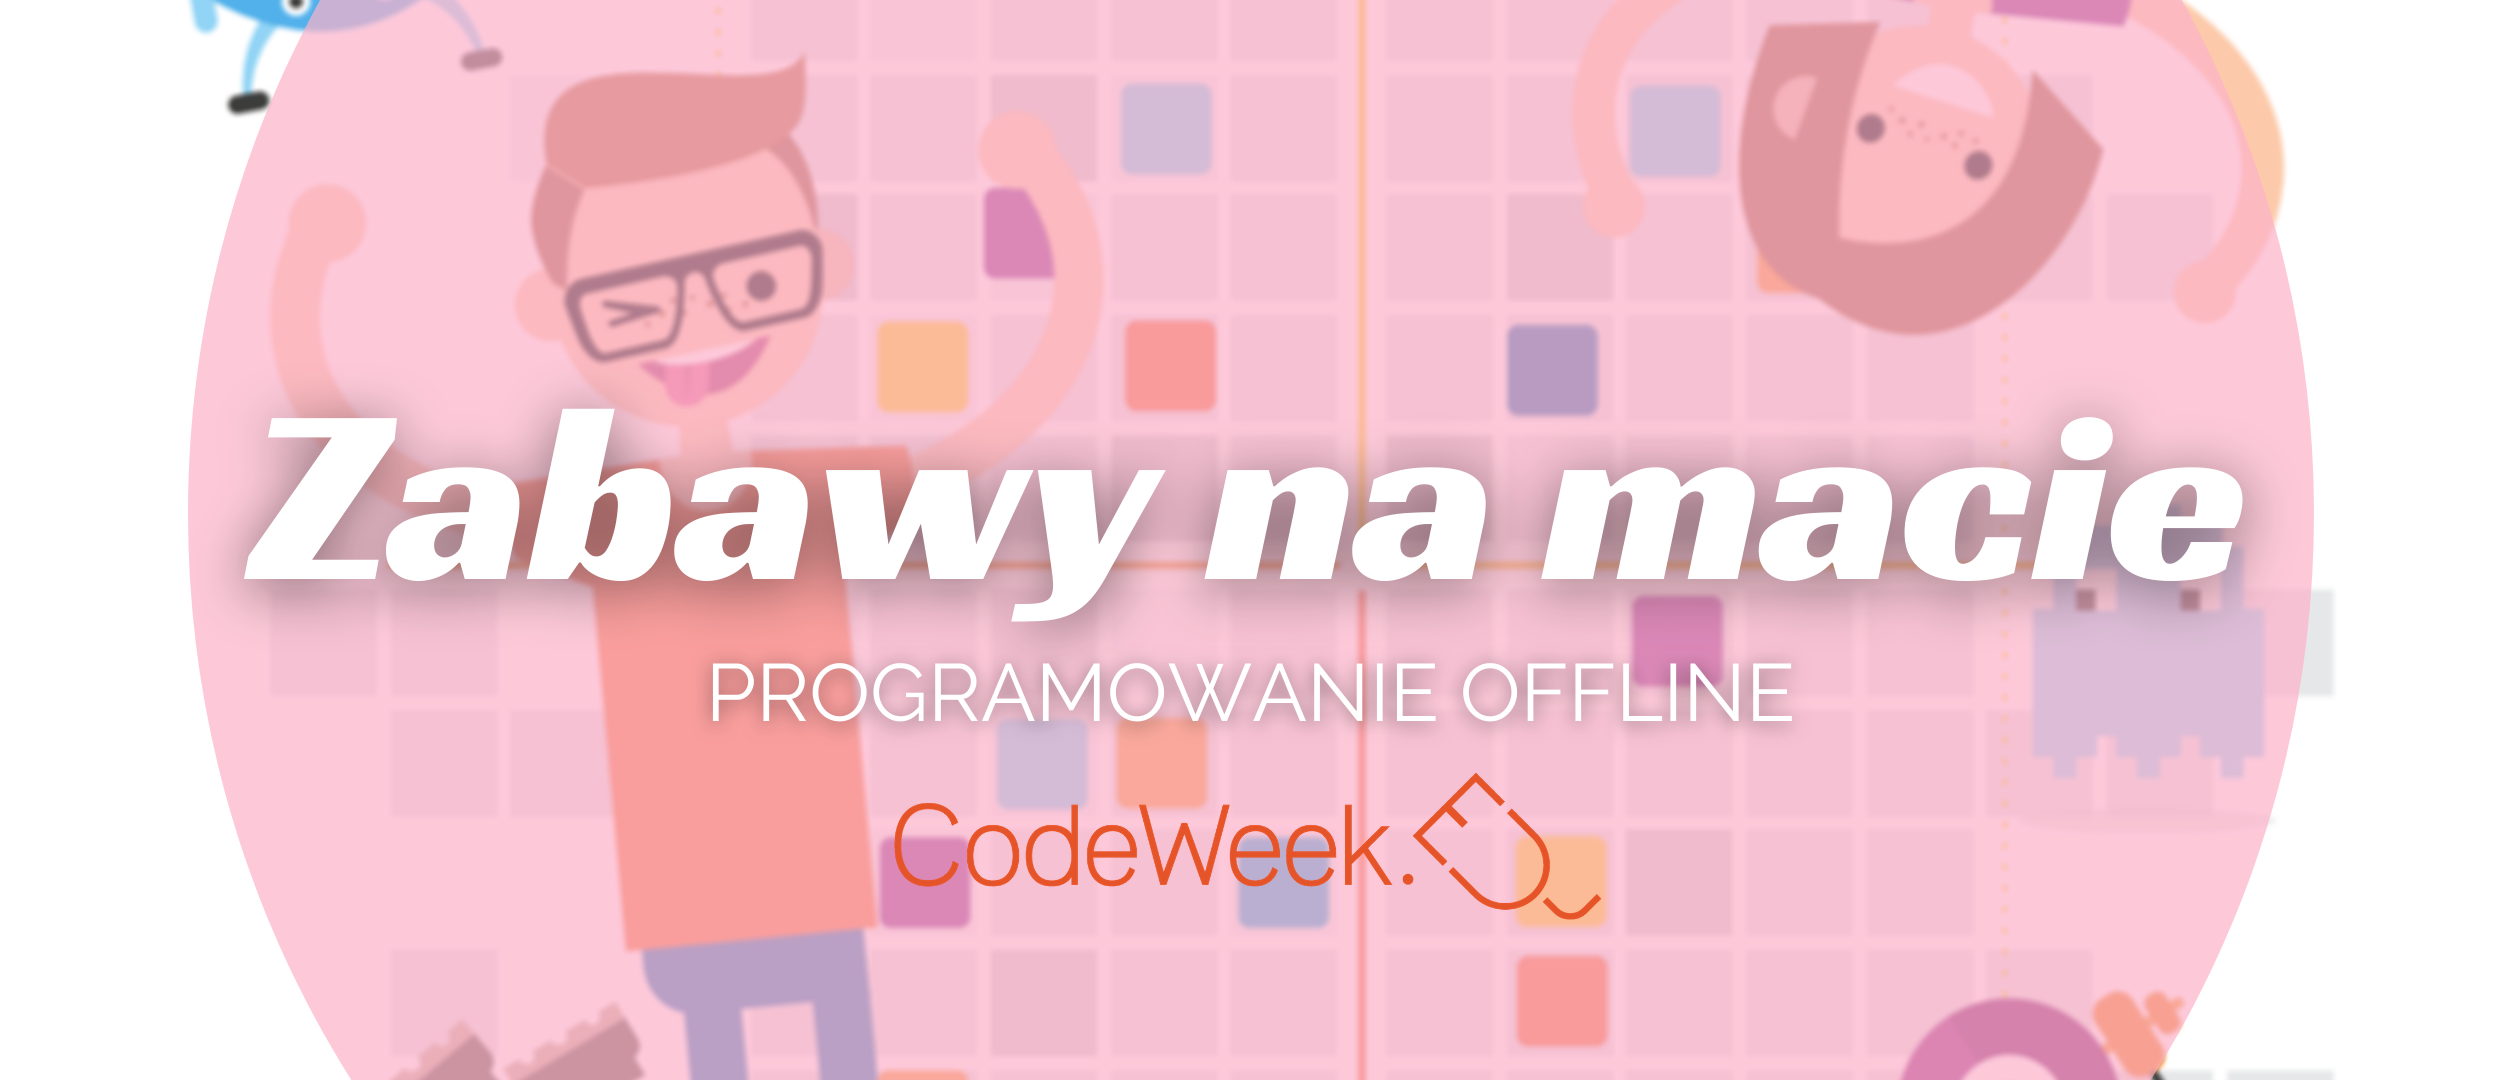 Grafika przedstawia animowaną ilustrację chłopca oraz dziewczynki na tle maty do kodowania. Na środku grafiki znajduje się różowe, półprzezroczyste koło. Na nim znajduje się biały tekst, który brzmi: “Zabawy na macie. Programowanie offline”. Poniżej znajduje się pomarańczowe logo “CodeWeek”. 